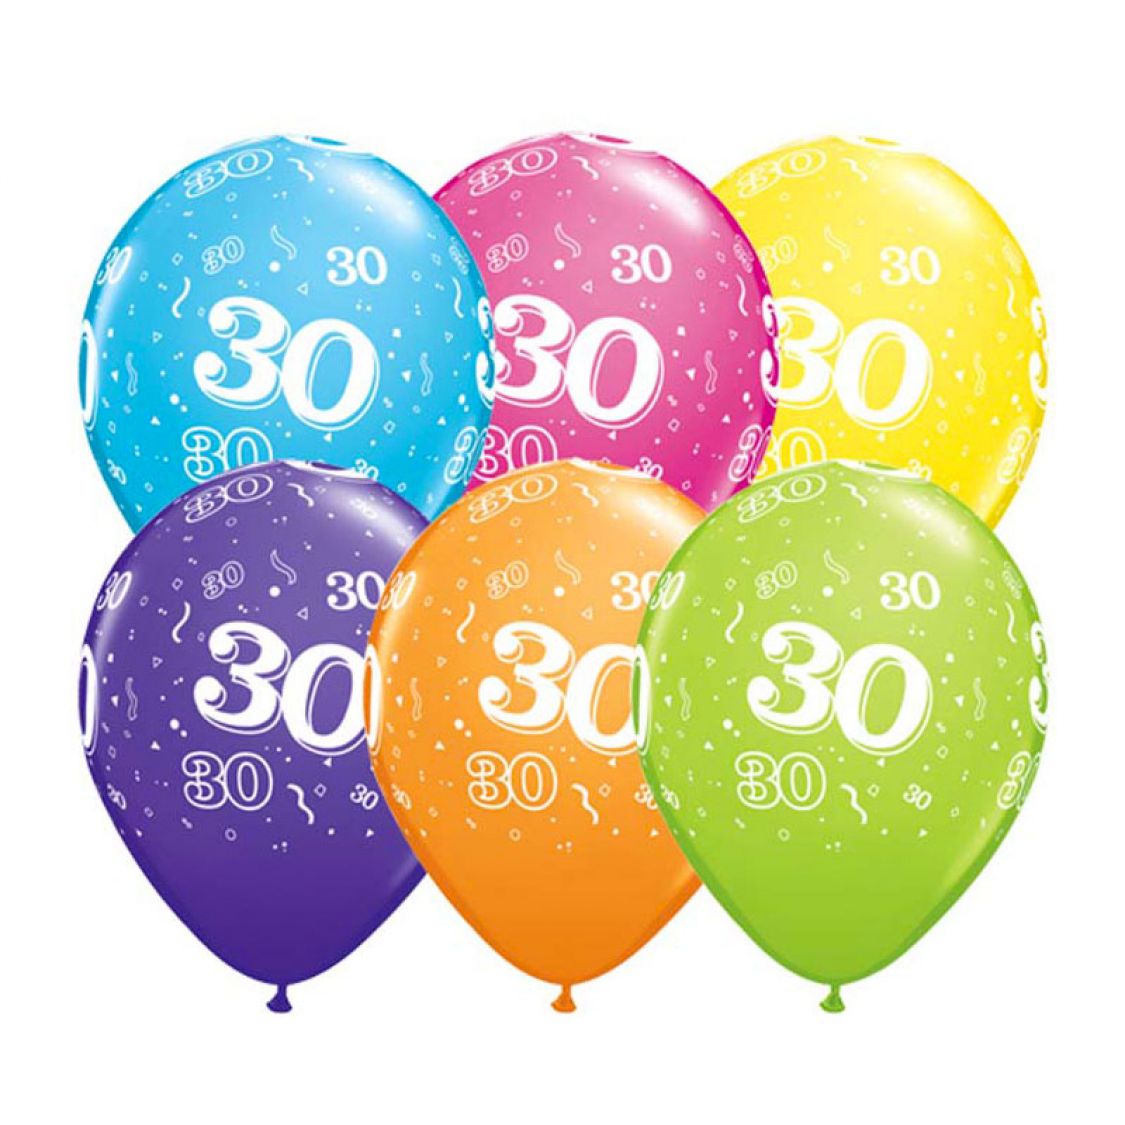 Ballon Qualatex 30 ans assortiment tropical